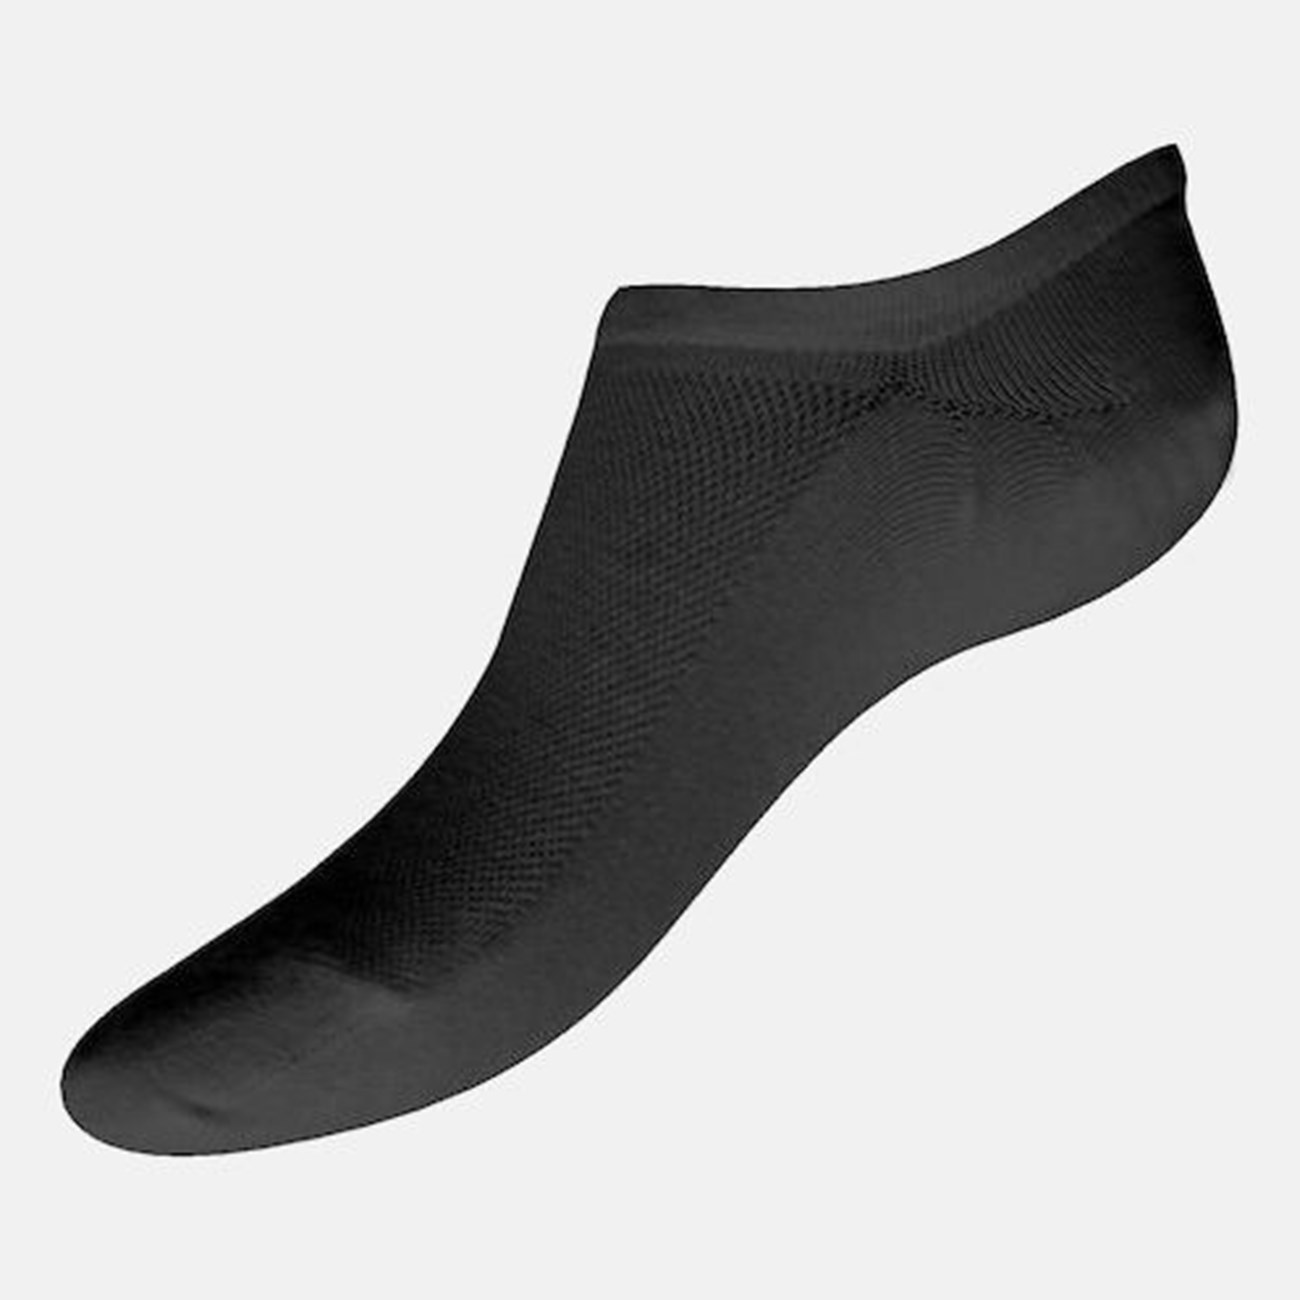  Γυναικείες Κάλτσες Sosoni Bamboo W335 - The Athlete's Foot